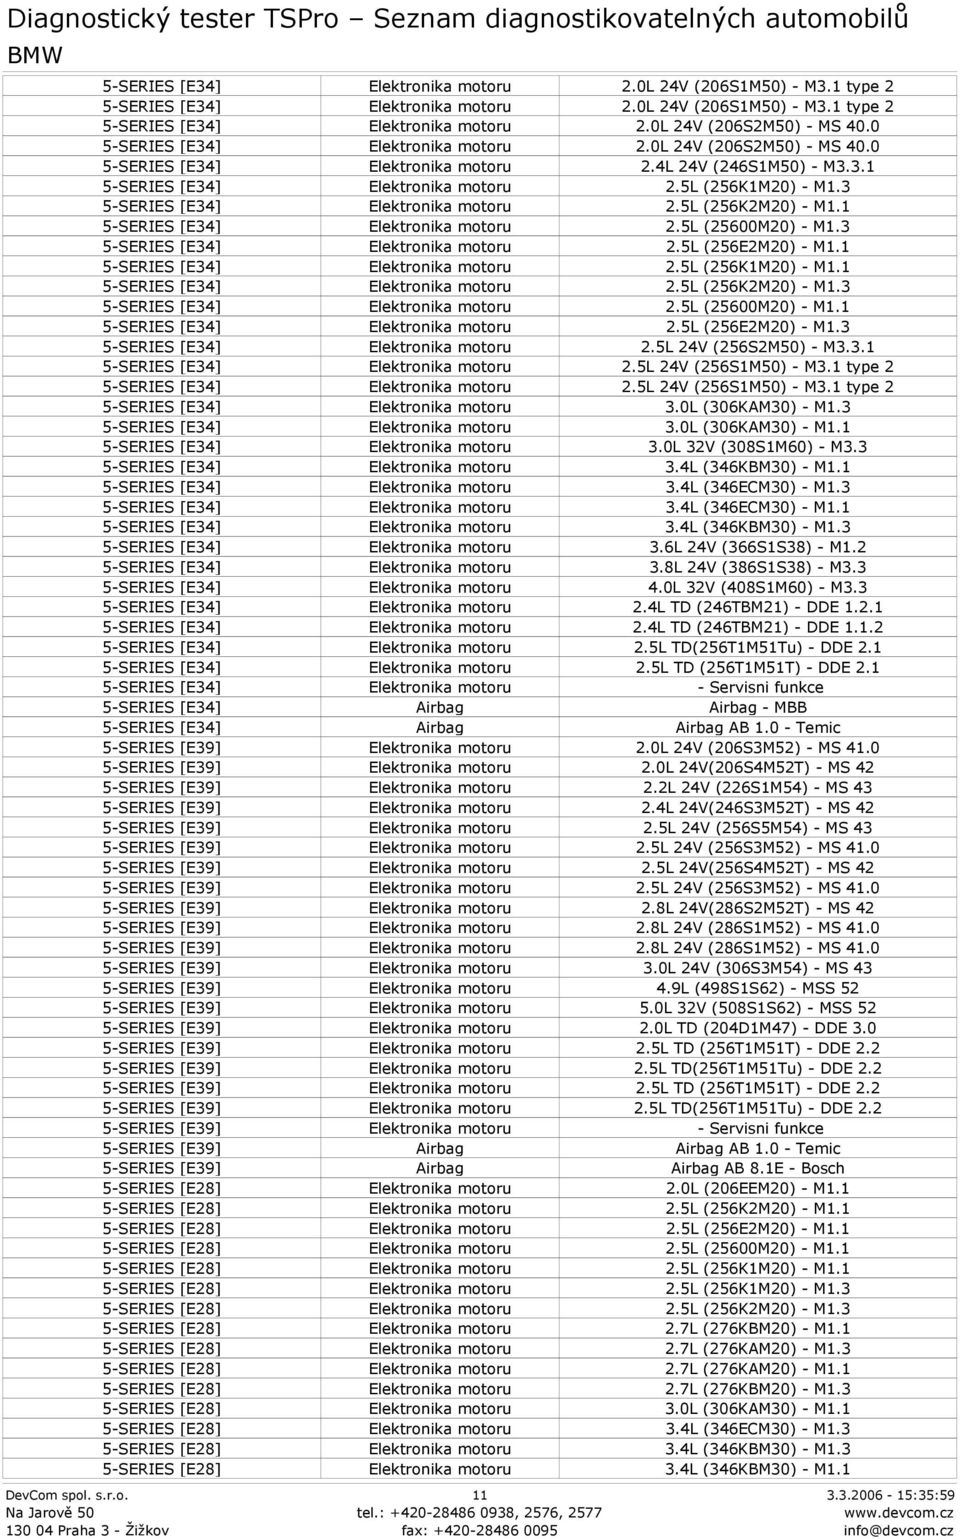 3.1 5-SERIES [E34] 2.5L 24V (256S1M50) - M3.1 type 2 5-SERIES [E34] 2.5L 24V (256S1M50) - M3.1 type 2 5-SERIES [E34] 3.0L (306KAM30) - M1.3 5-SERIES [E34] 3.0L (306KAM30) - M1.1 5-SERIES [E34] 3.